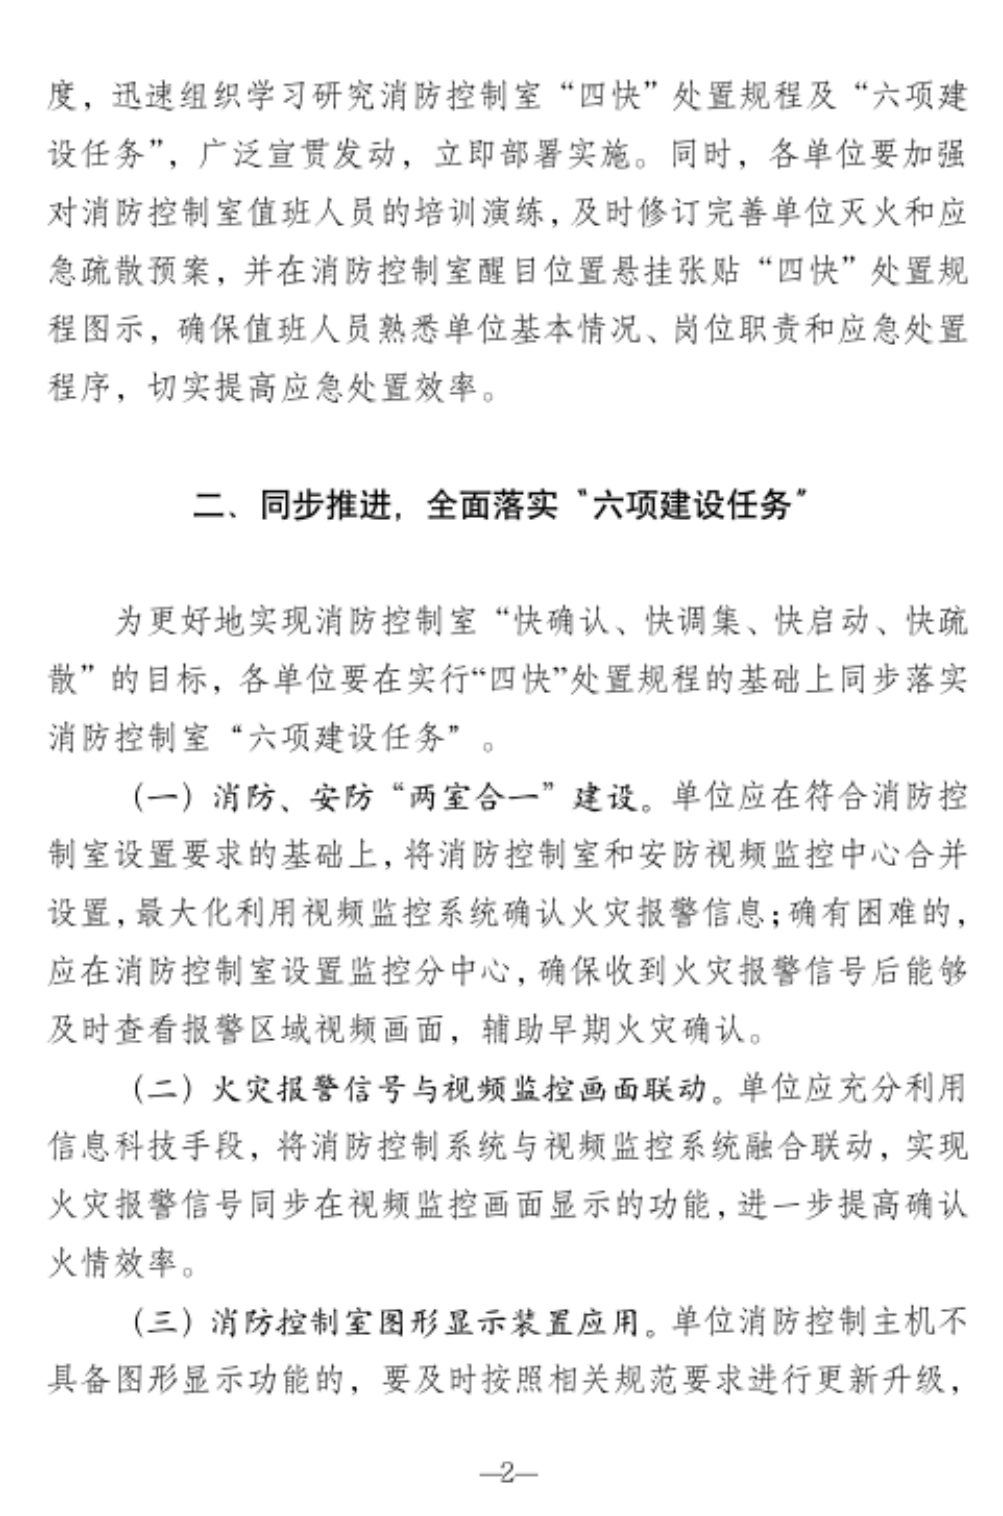 北京市消防救援总队关于推行消防控制室“四快”处置规程的通知